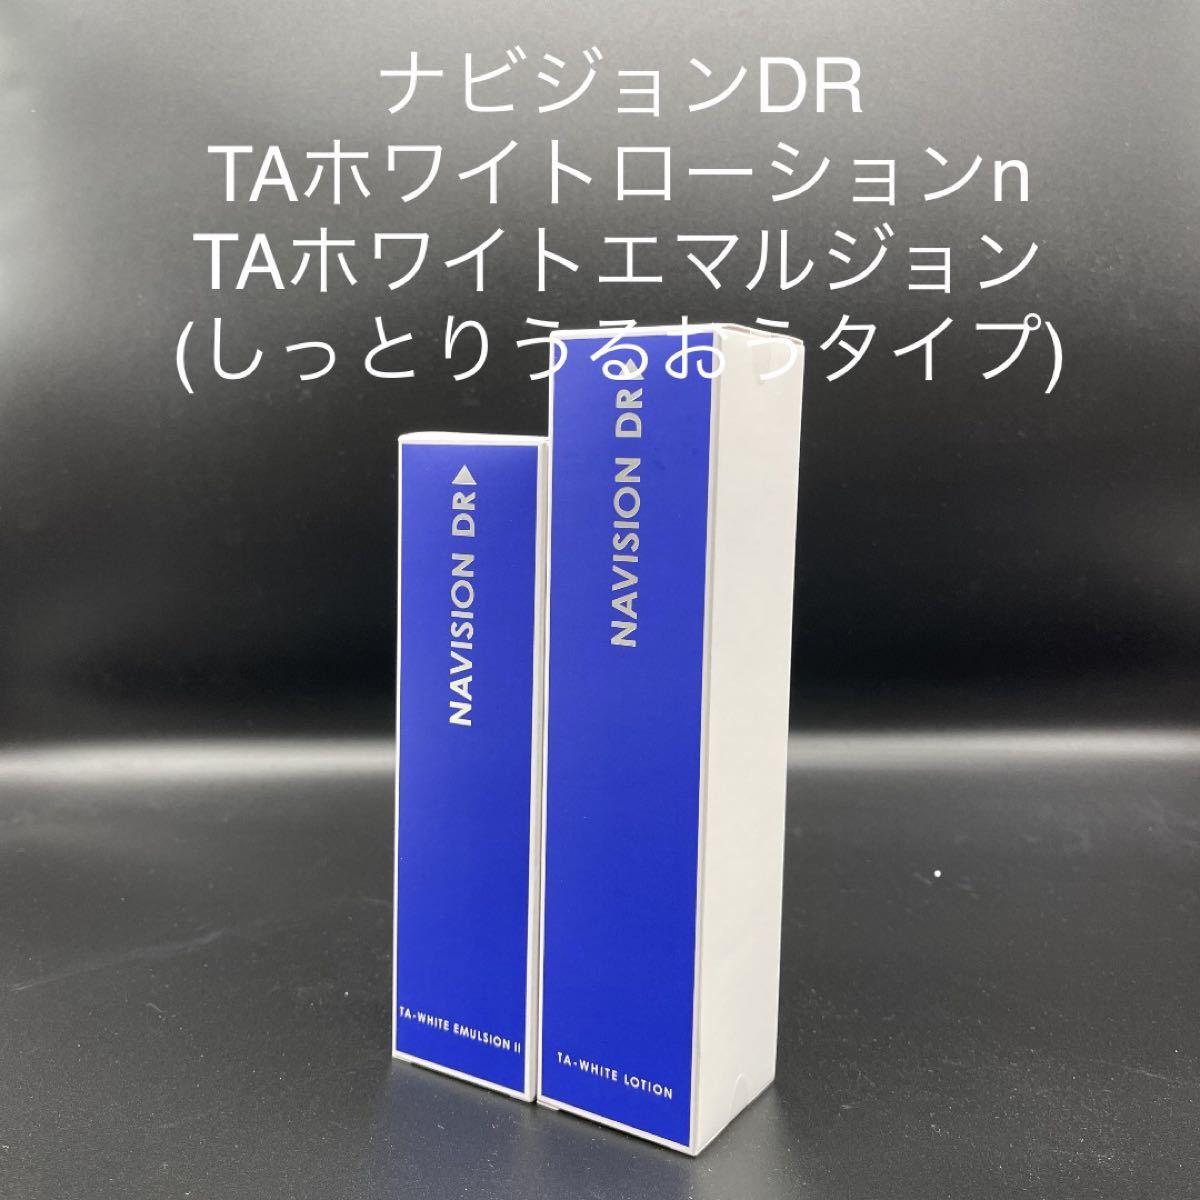 資生堂 ナビジョンDR TAホワイトエマルジョンⅡn - 基礎化粧品